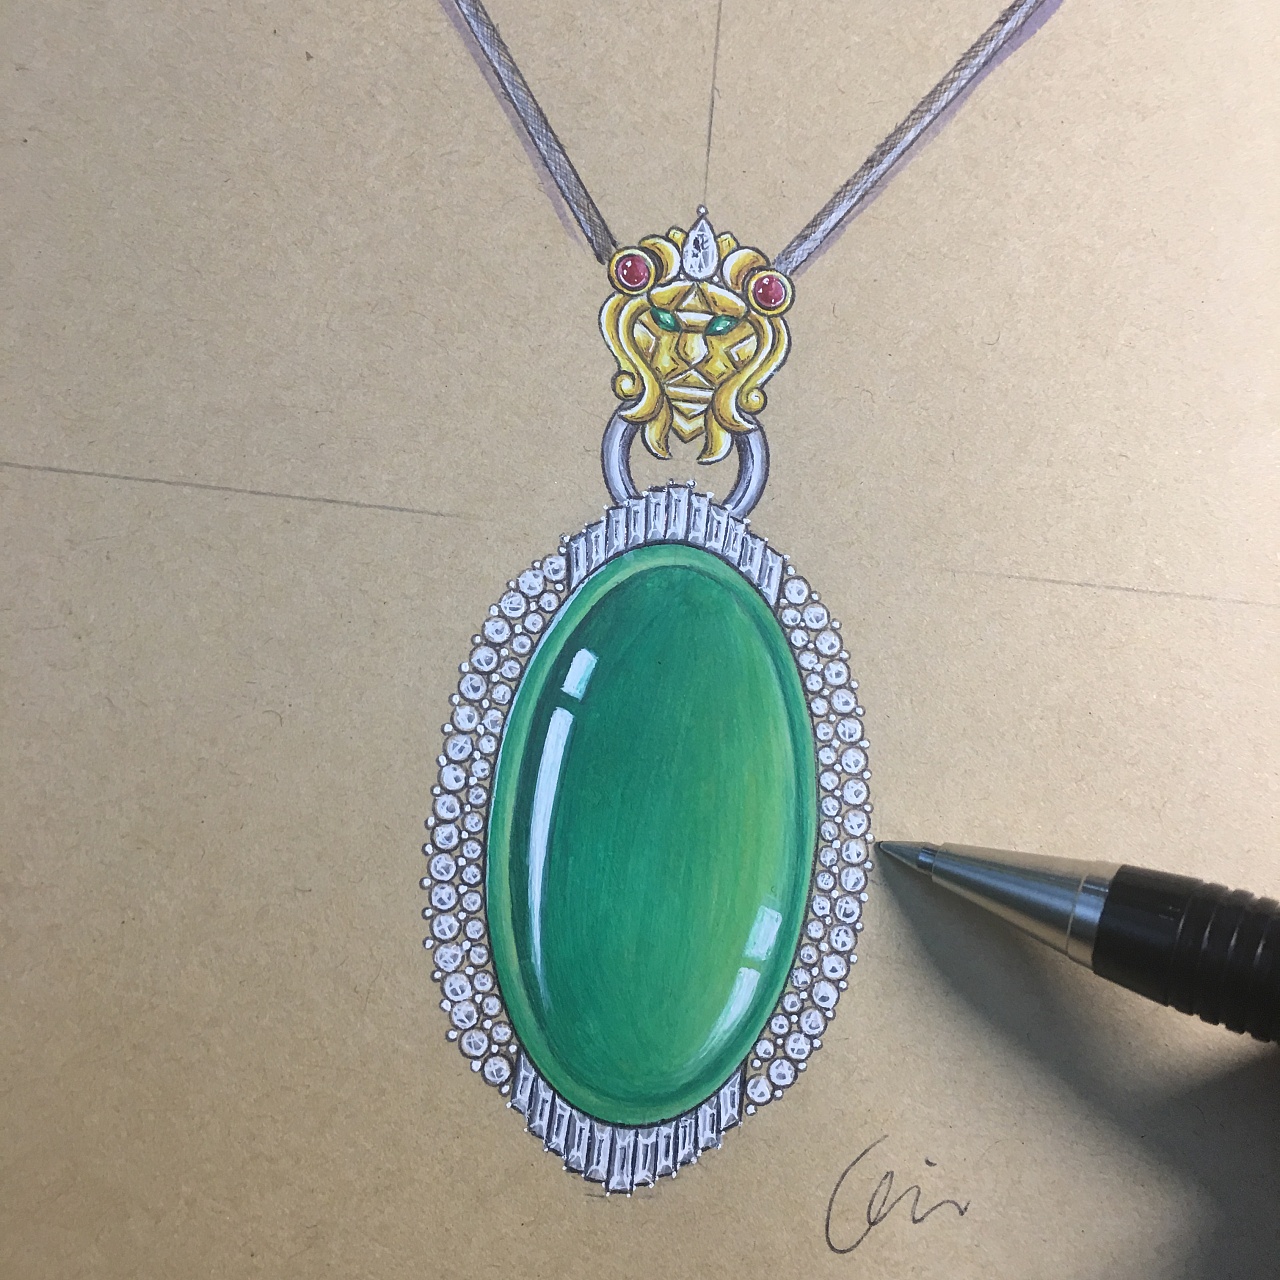 1000张珠宝首饰设计步骤图/线稿/彩铅/水彩/素描手绘素材免费领取！